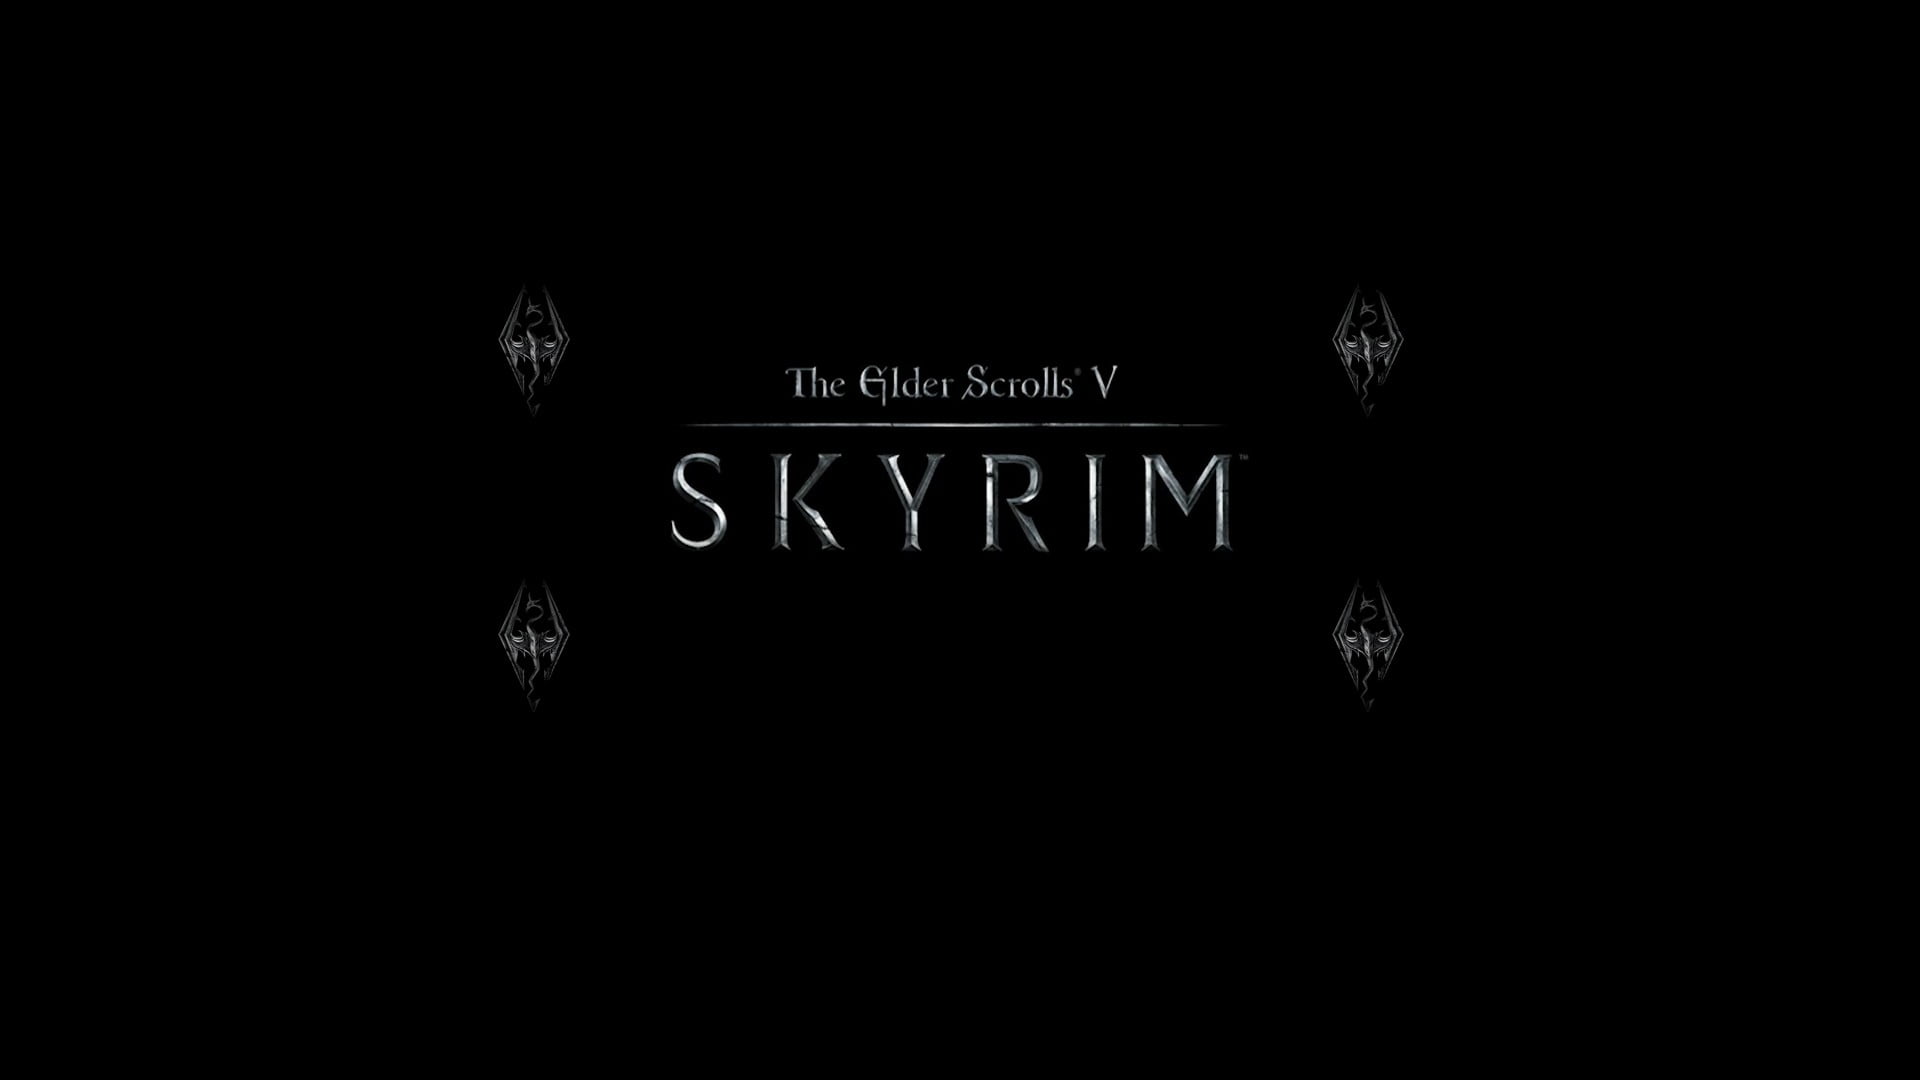 Skyrim wallpaper, The Elder Scrolls V: Skyrim